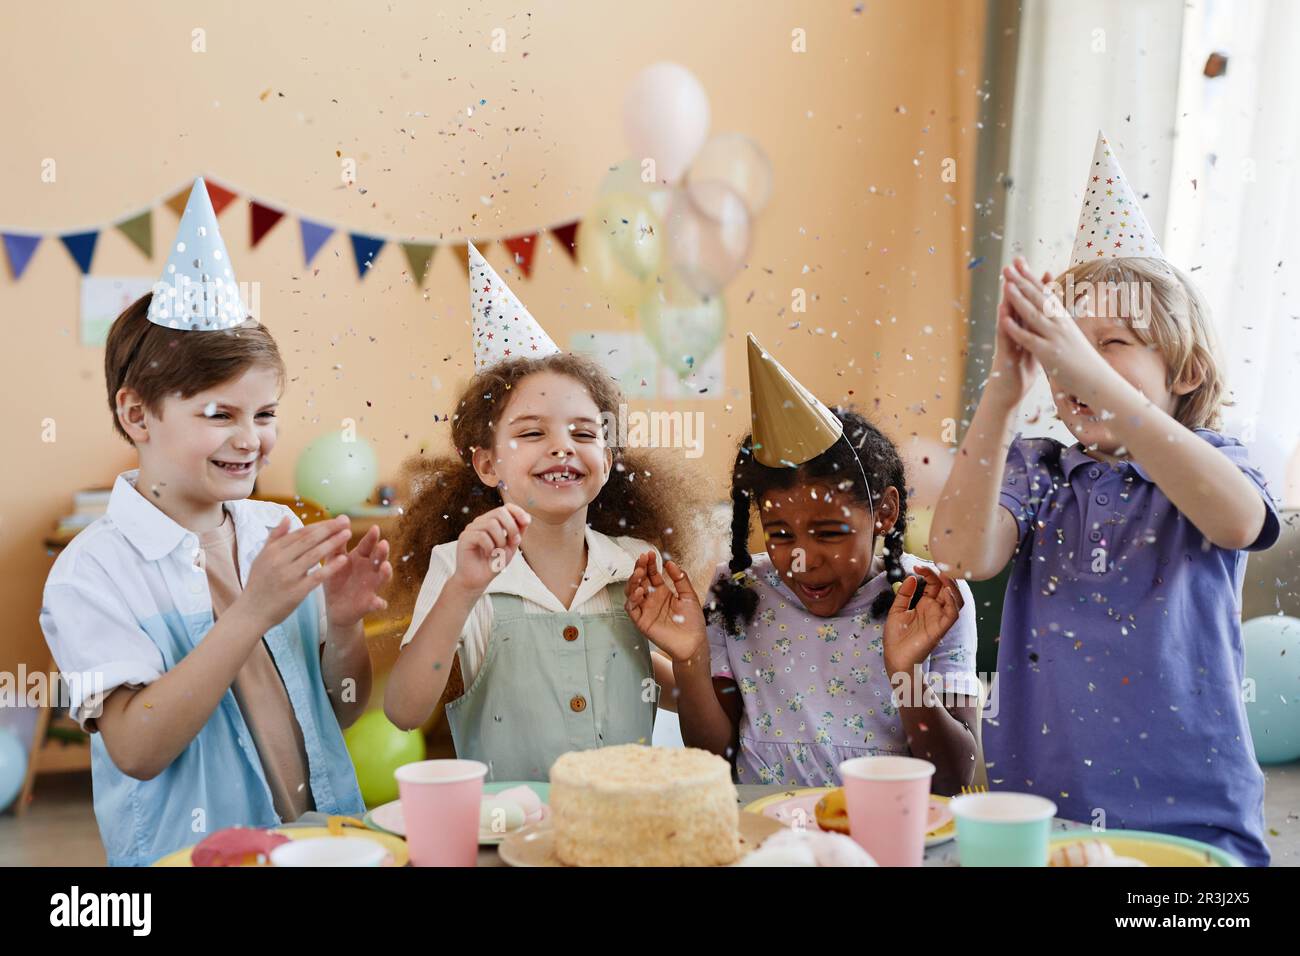 Vielfältige Gruppe von aufgeregten kleinen Kindern, die Konfetti werfen, während sie eine Geburtstagsparty für Kinder genießen und Spaß haben Stockfoto